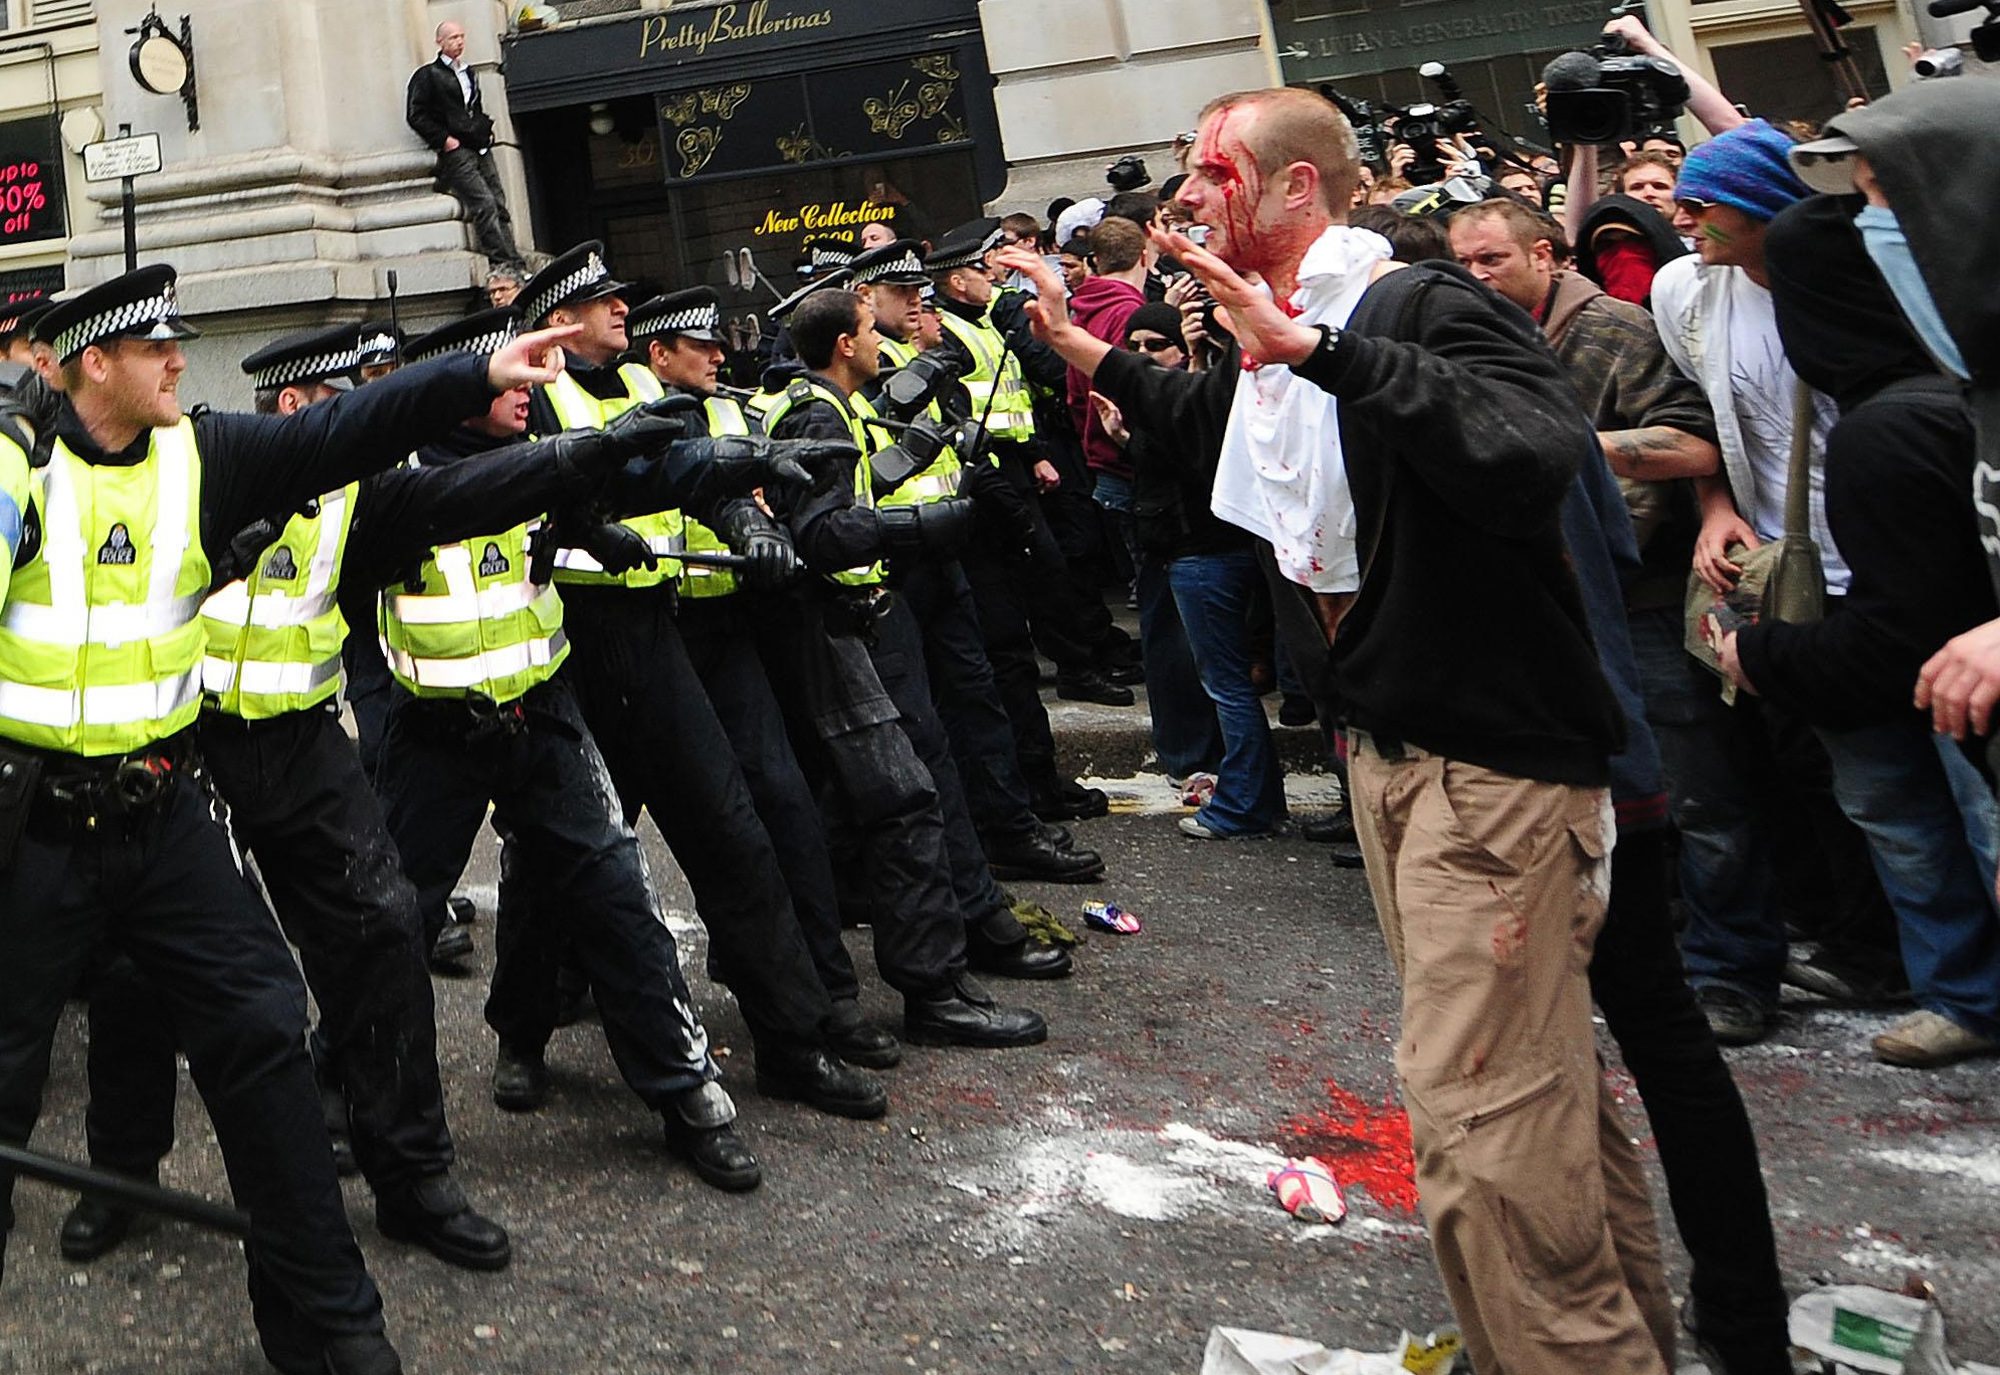 Near crowd. Англия разгон демонстрантов. Массовые беспорядки полиция. Разгон демонстрации в Англии. Демонстрация в Британии.